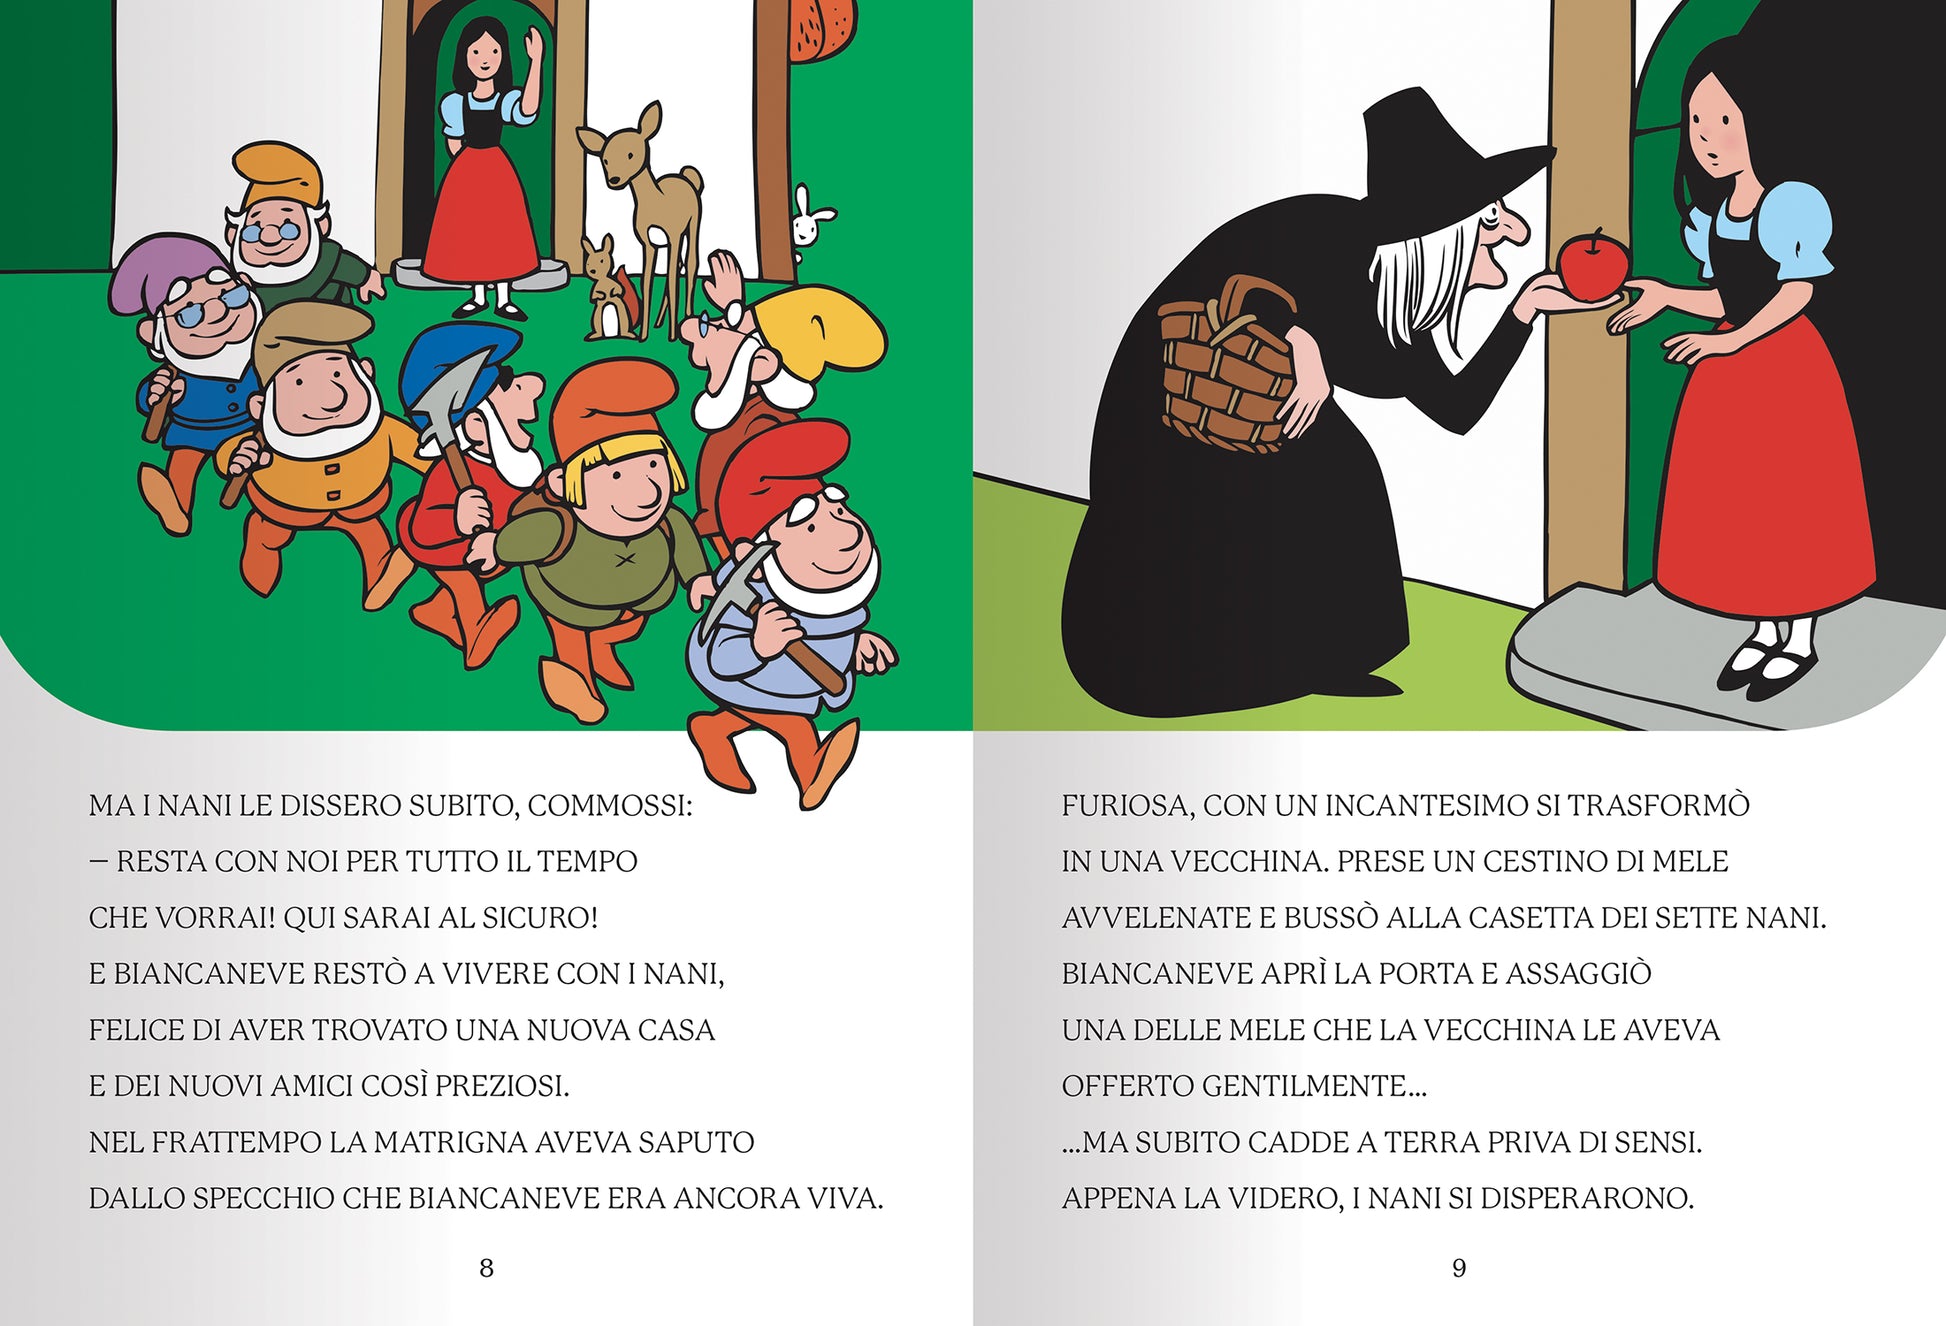 Libro per Bambini LE FIABE DI PANDI Dami Editore